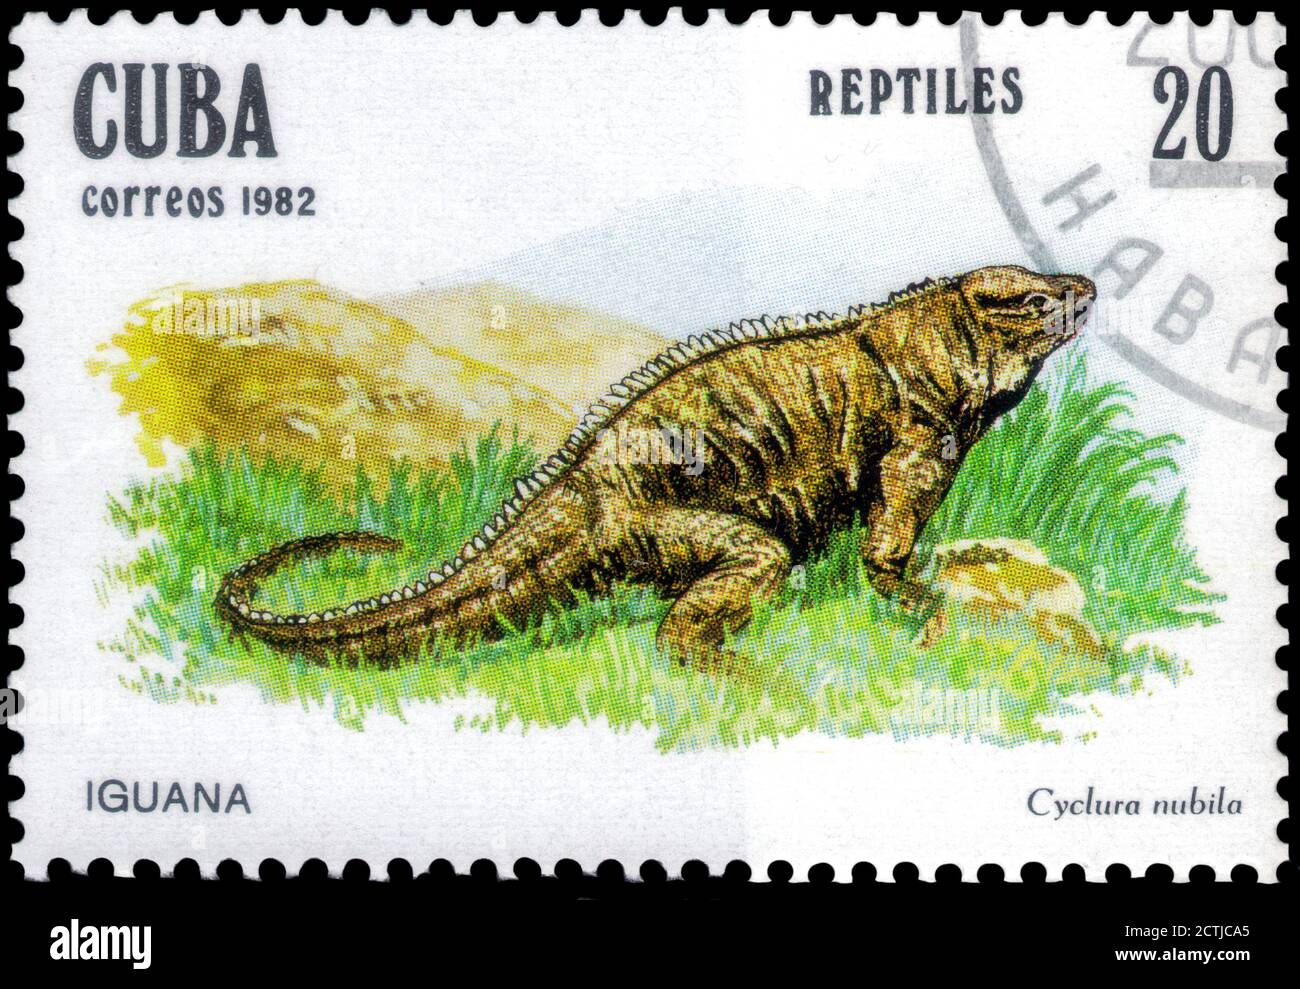 San Petersburgo, Rusia - 18 de septiembre de 2020: Sello impreso en la Cuba la imagen de la Iguana Roca Cubana, Cyclura nubila, alrededor de 1982 Foto de stock